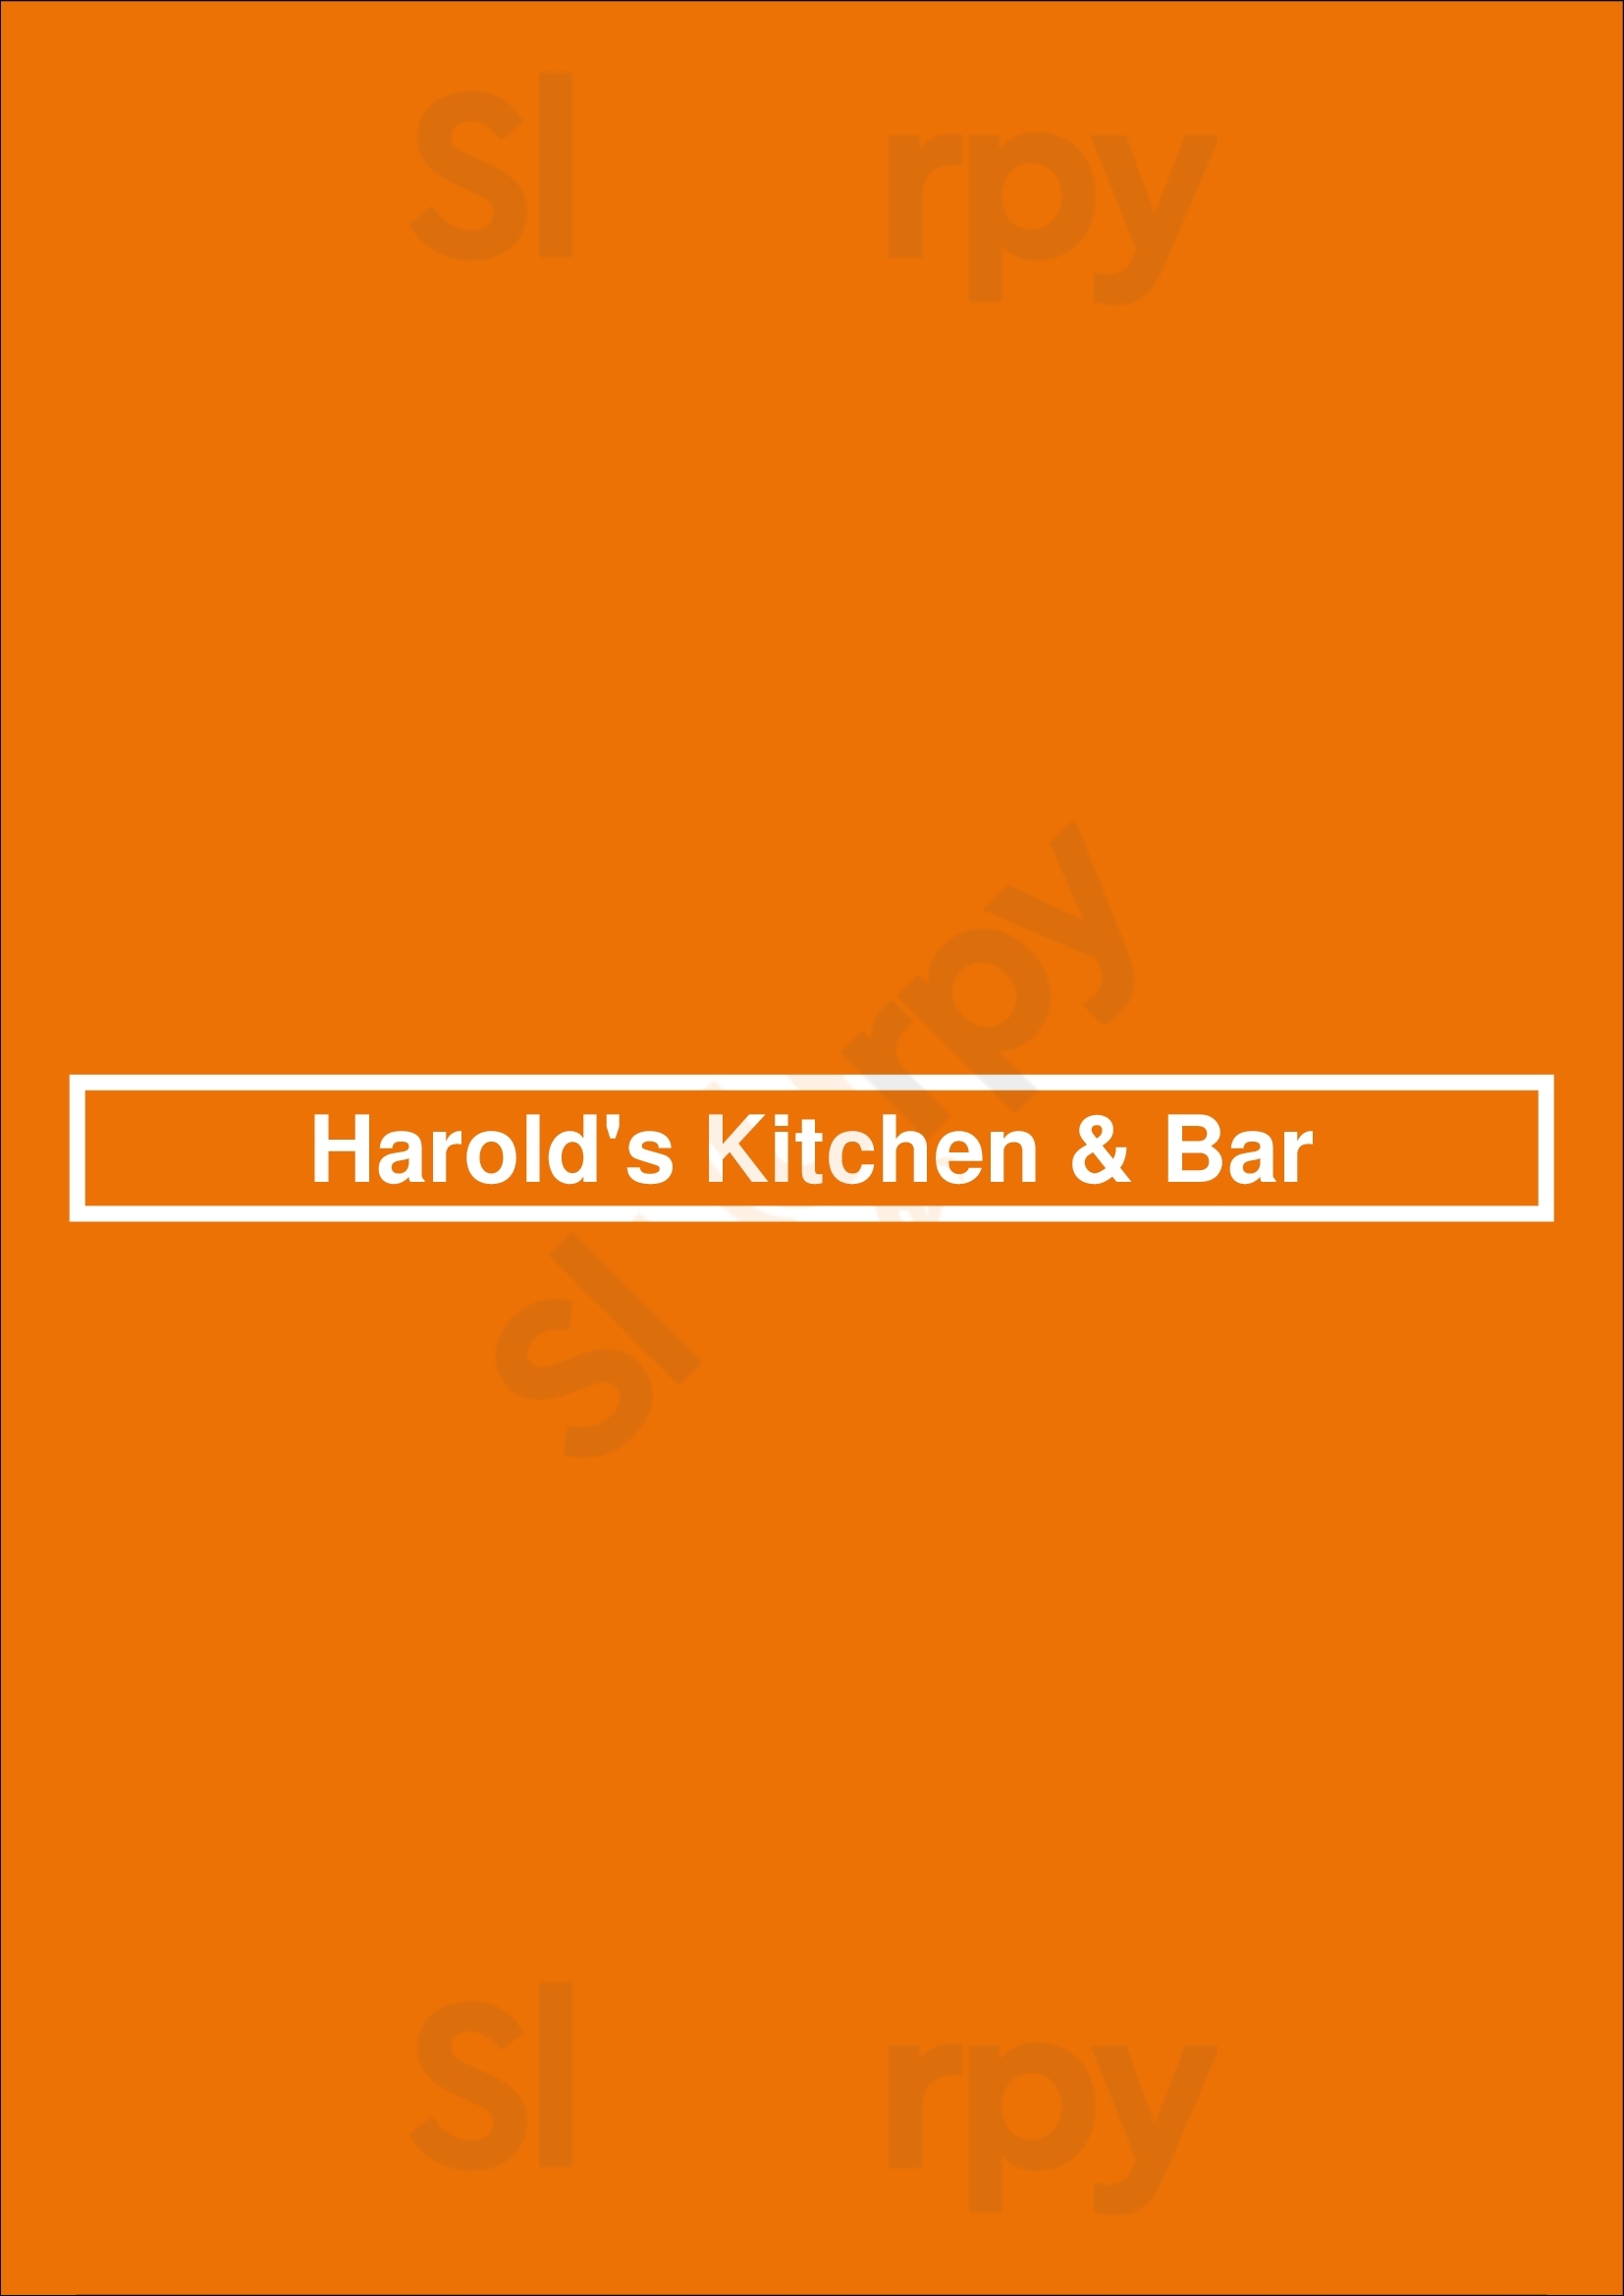 Harold's Kitchen & Bar Richmond Menu - 1